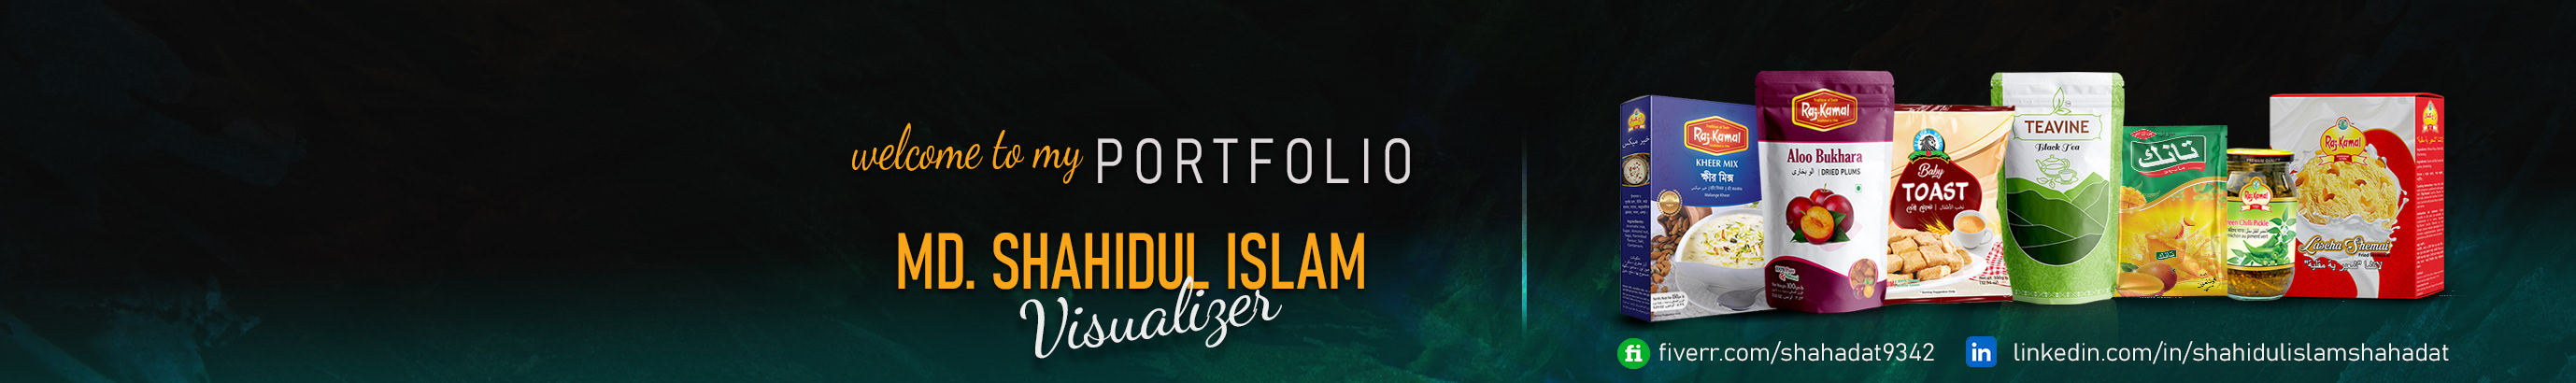 Md. Shahidul Islam Shahadat profil başlığı